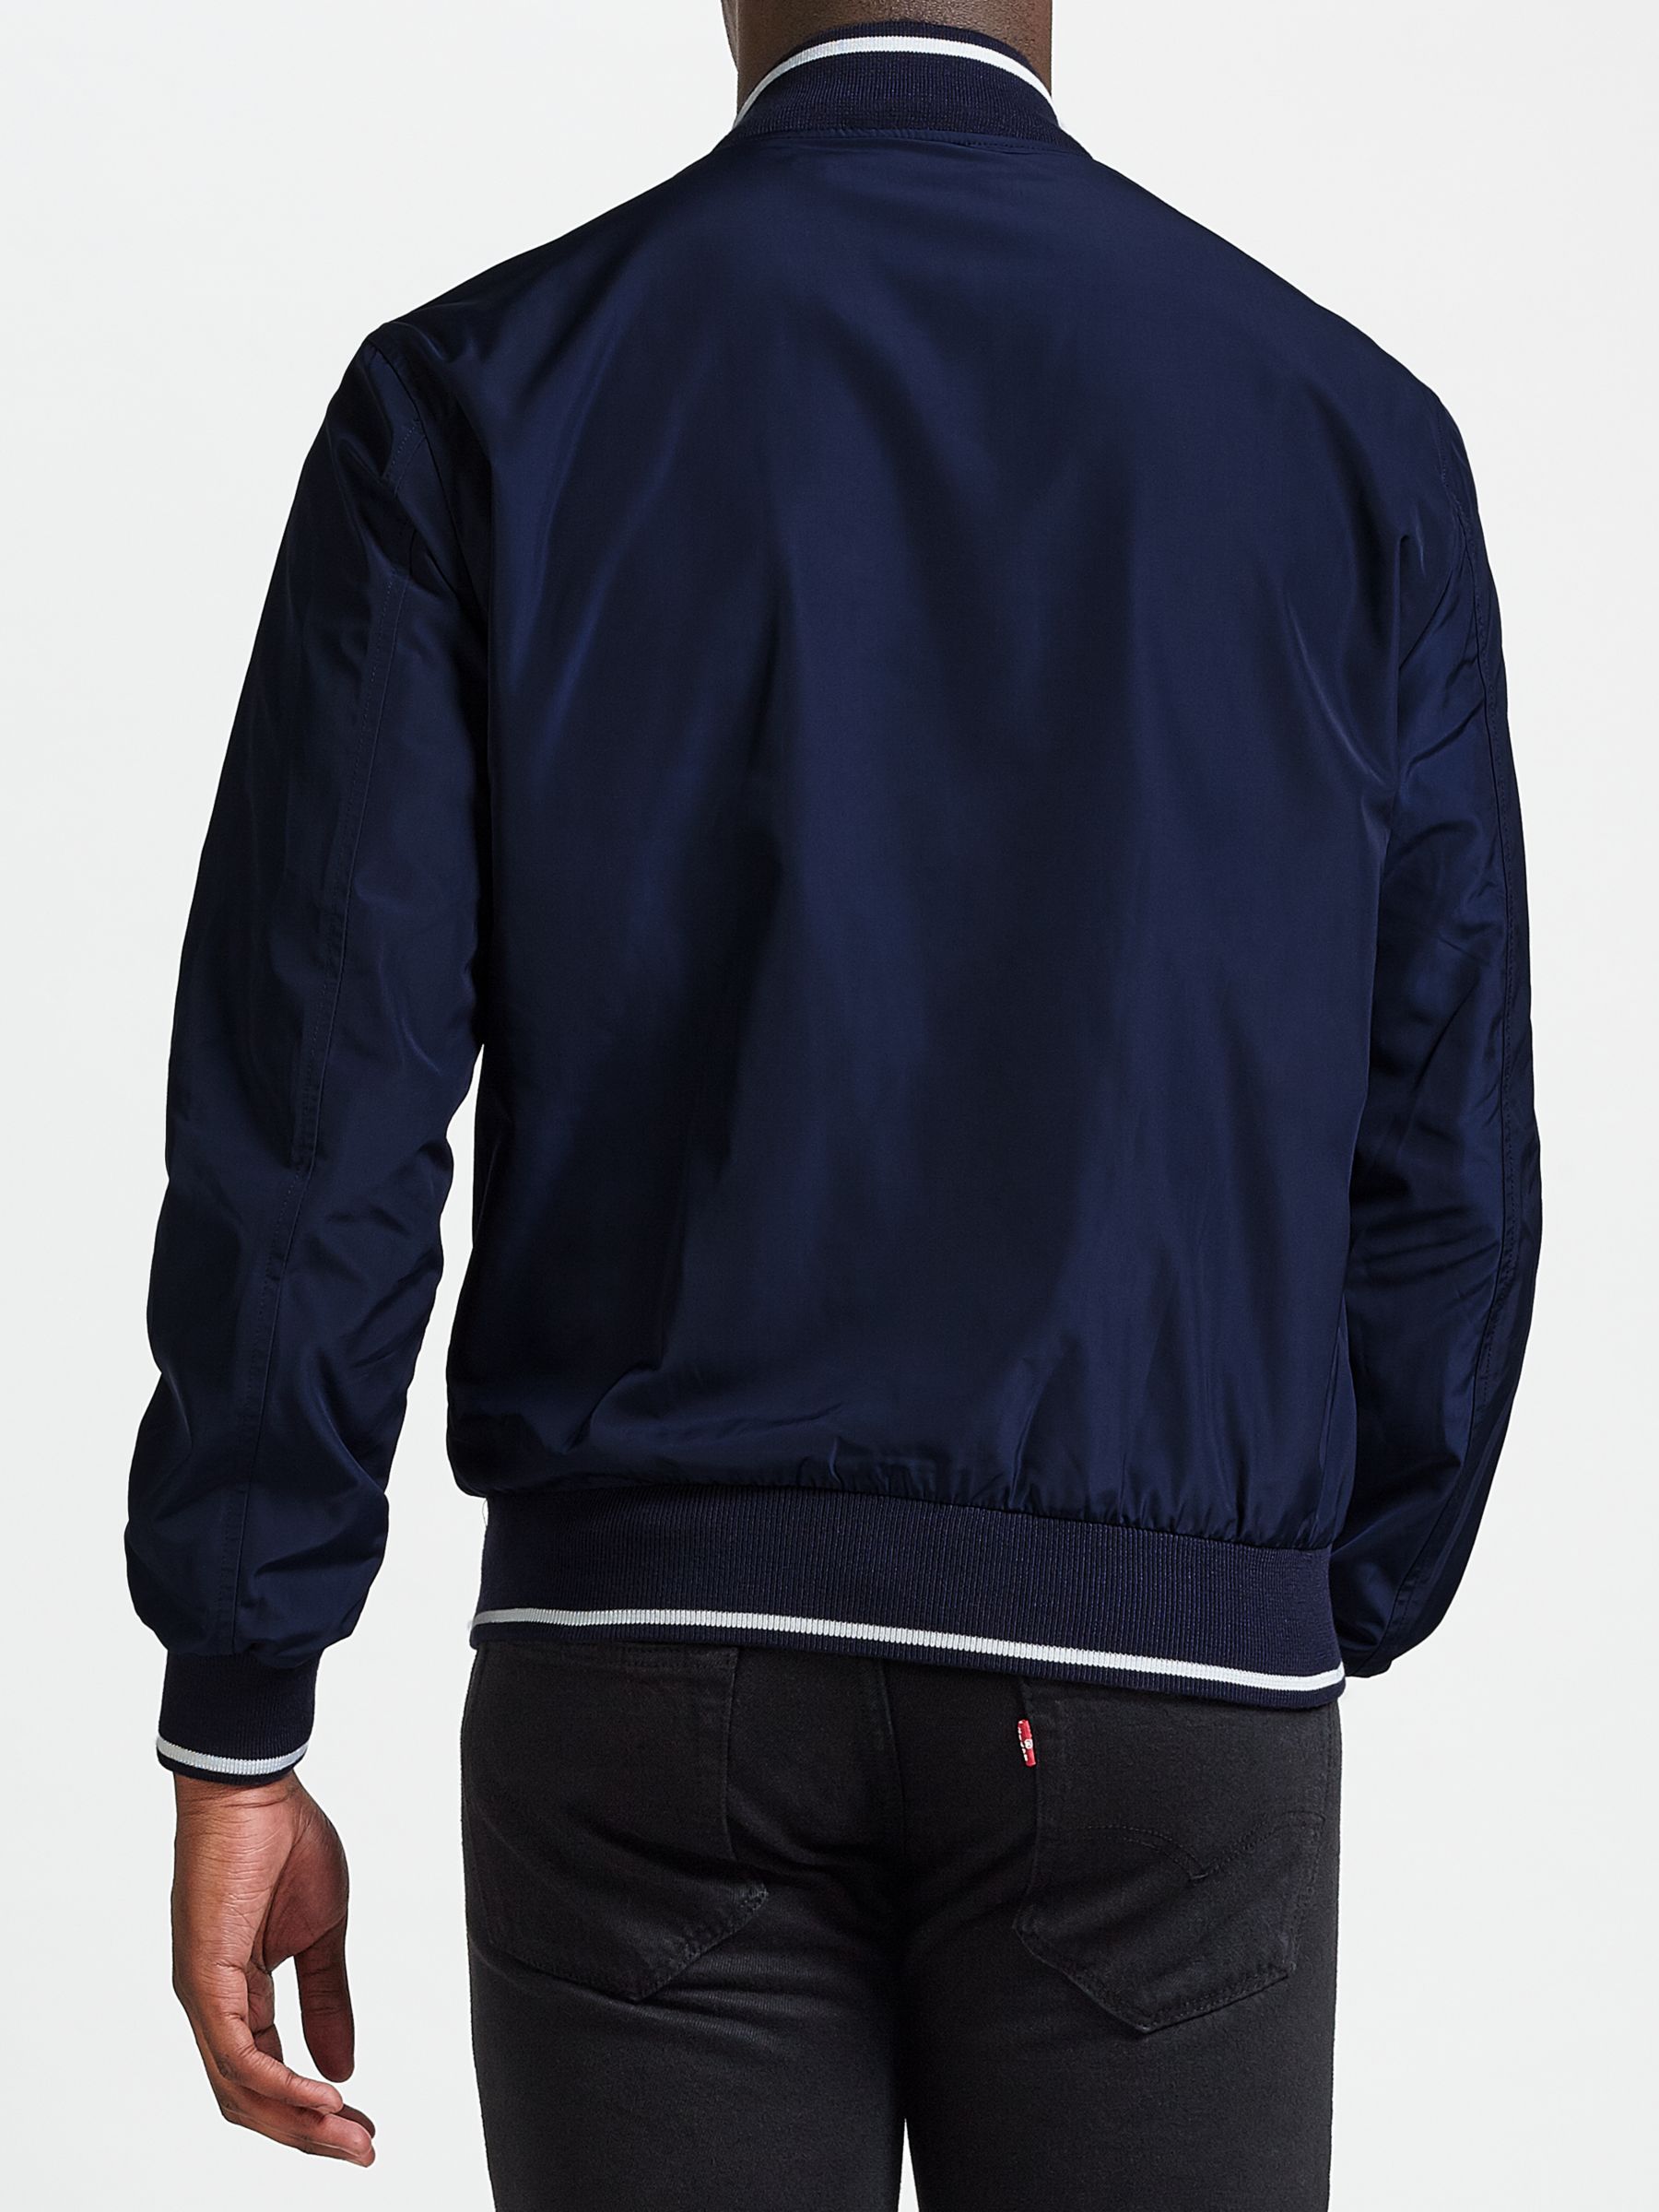 Polo Ralph Lauren Tennis Jacket, Navy